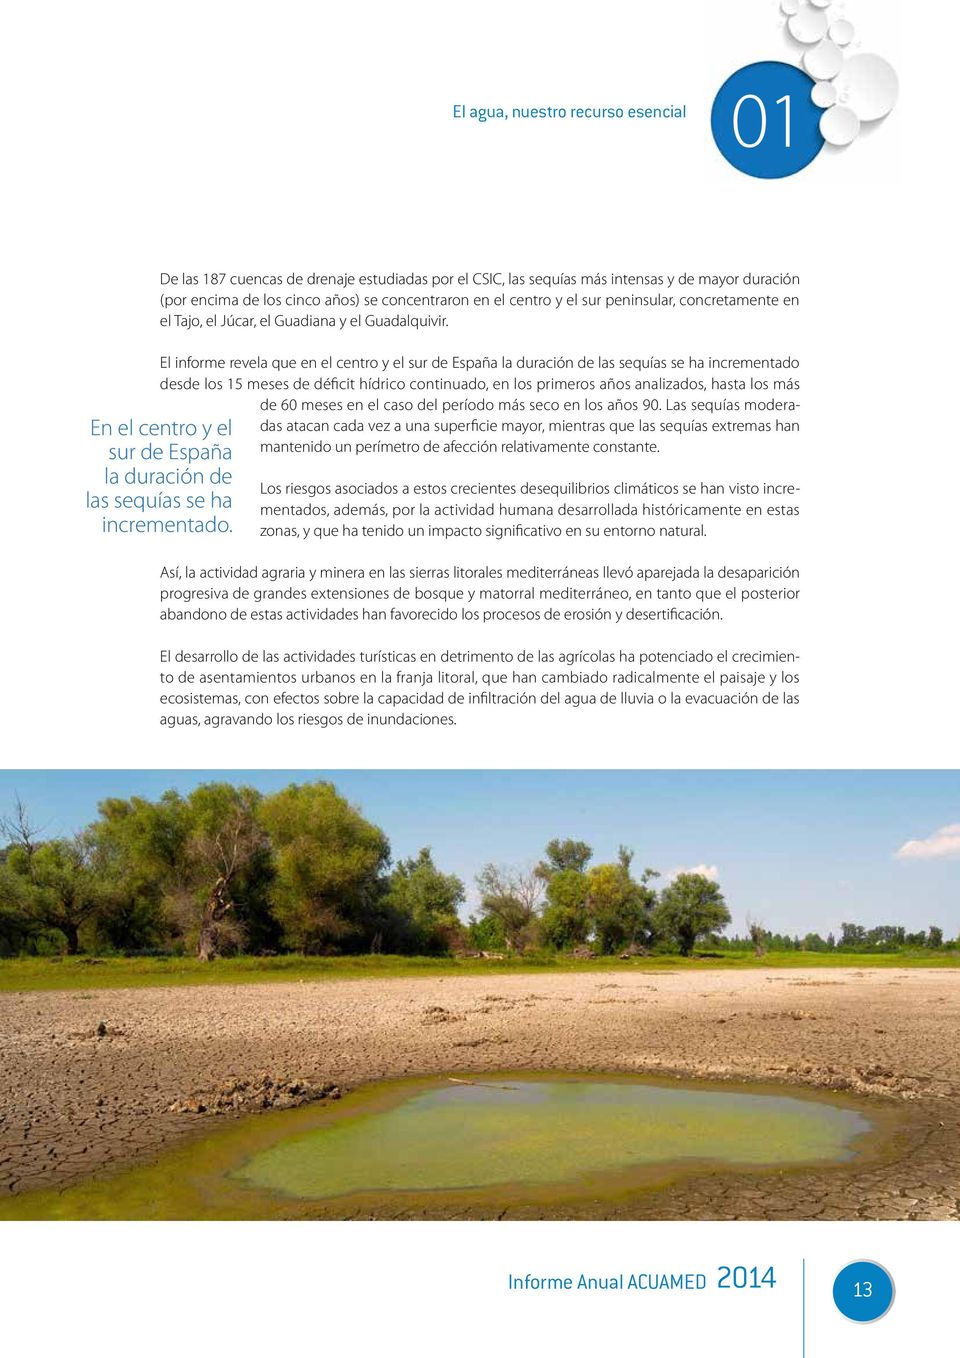 El informe revela que en el centro y el sur de España la duración de las sequías se ha incrementado desde los 15 meses de déficit hídrico continuado, en los primeros años analizados, hasta los más de